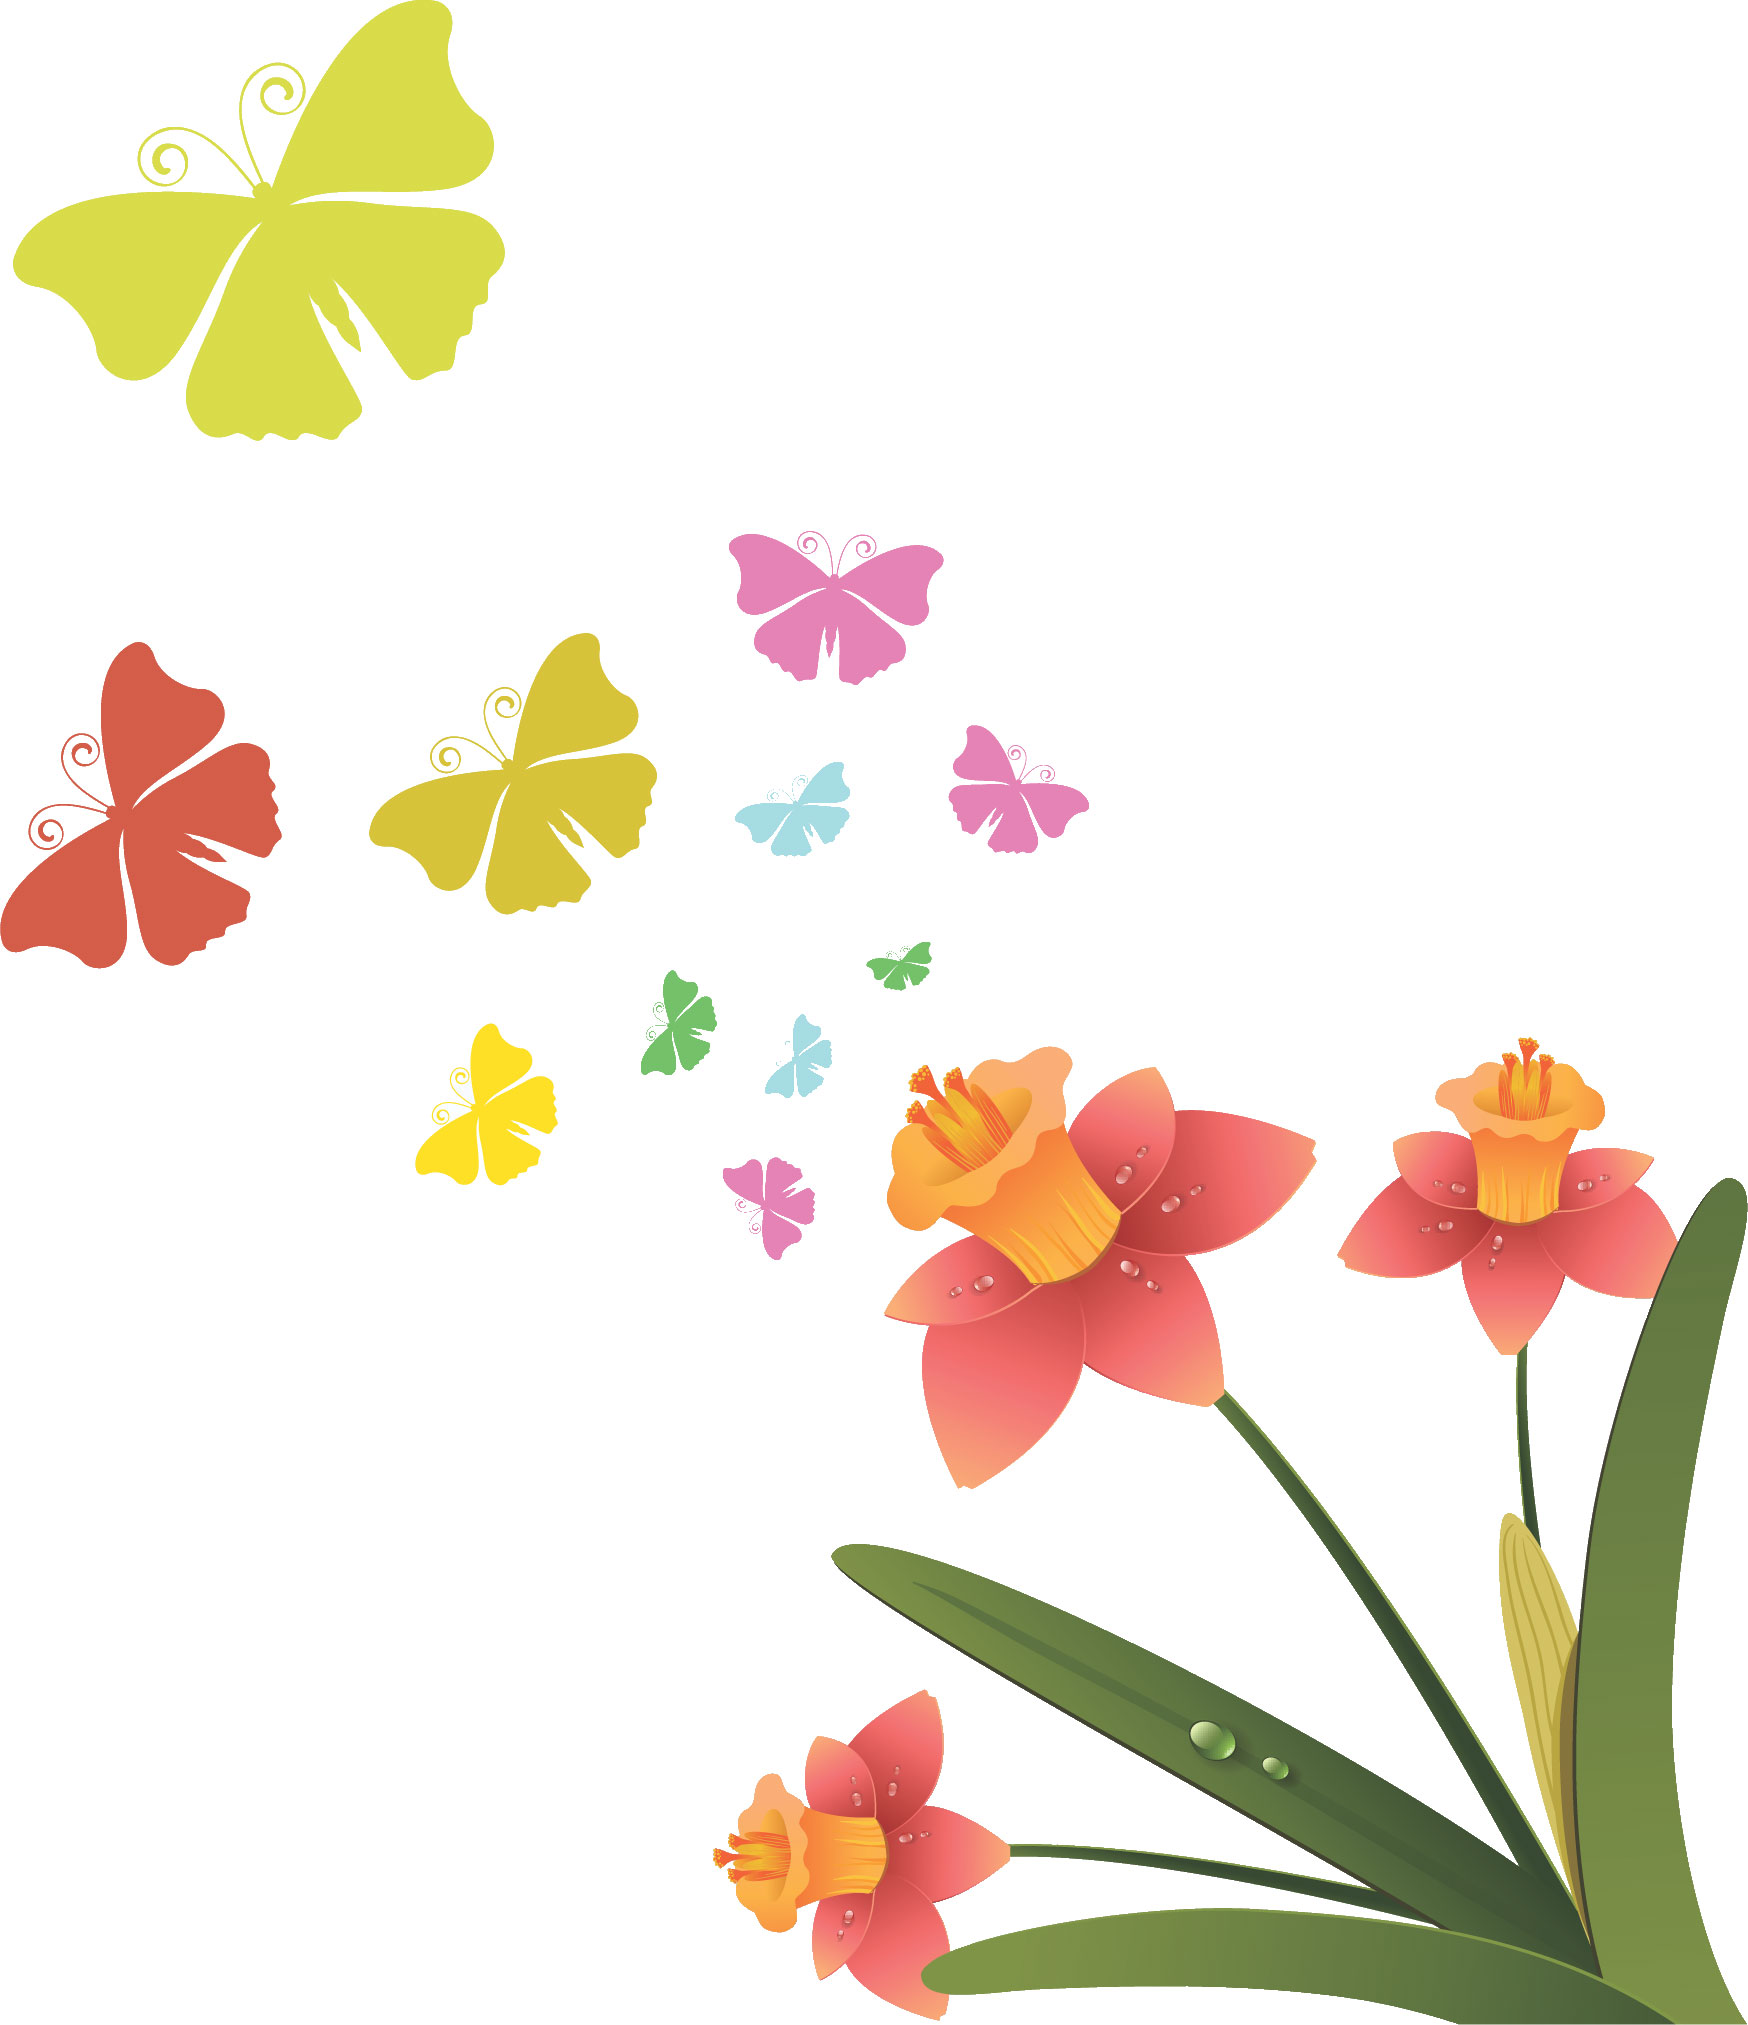 すいせん 水仙 のイラスト 画像no 27 ピンクのスイセンと蝶々 無料のフリー素材集 百花繚乱